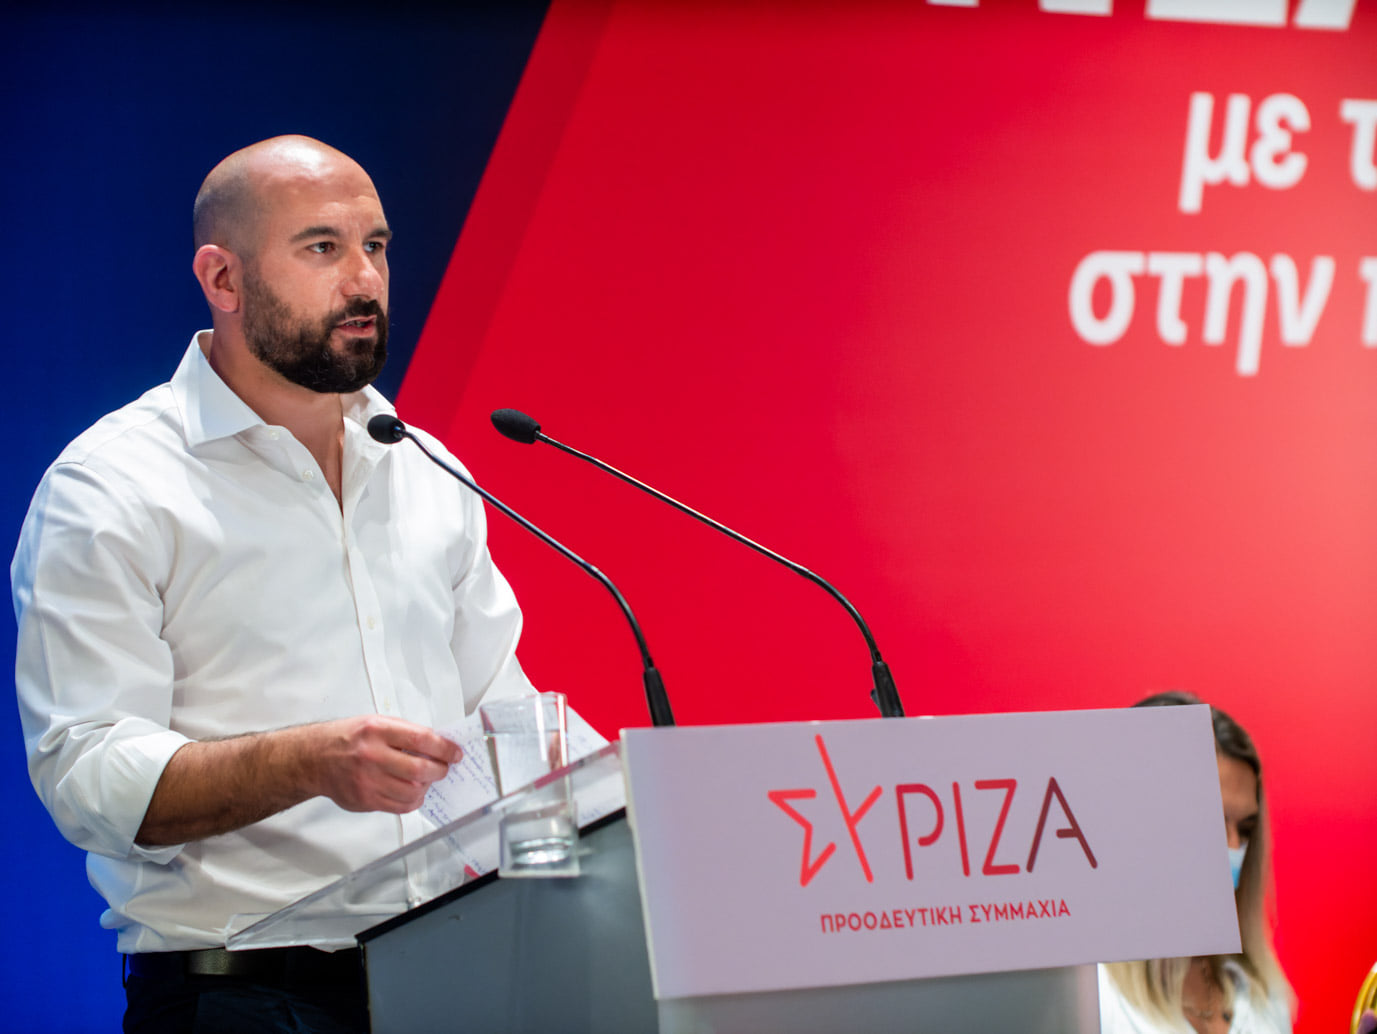 Δ. Τζανακόπουλος: Κόμμα το οποίο έχει βουλευτή καταδικασμένο δε θα πρέπει να ανακηρύσσεται ενόψει των εκλογών - Αυτή είναι η πιο αποτελεσματική ρύθμιση, η οποία δεν θέτει και συνταγματικά προβλήματα